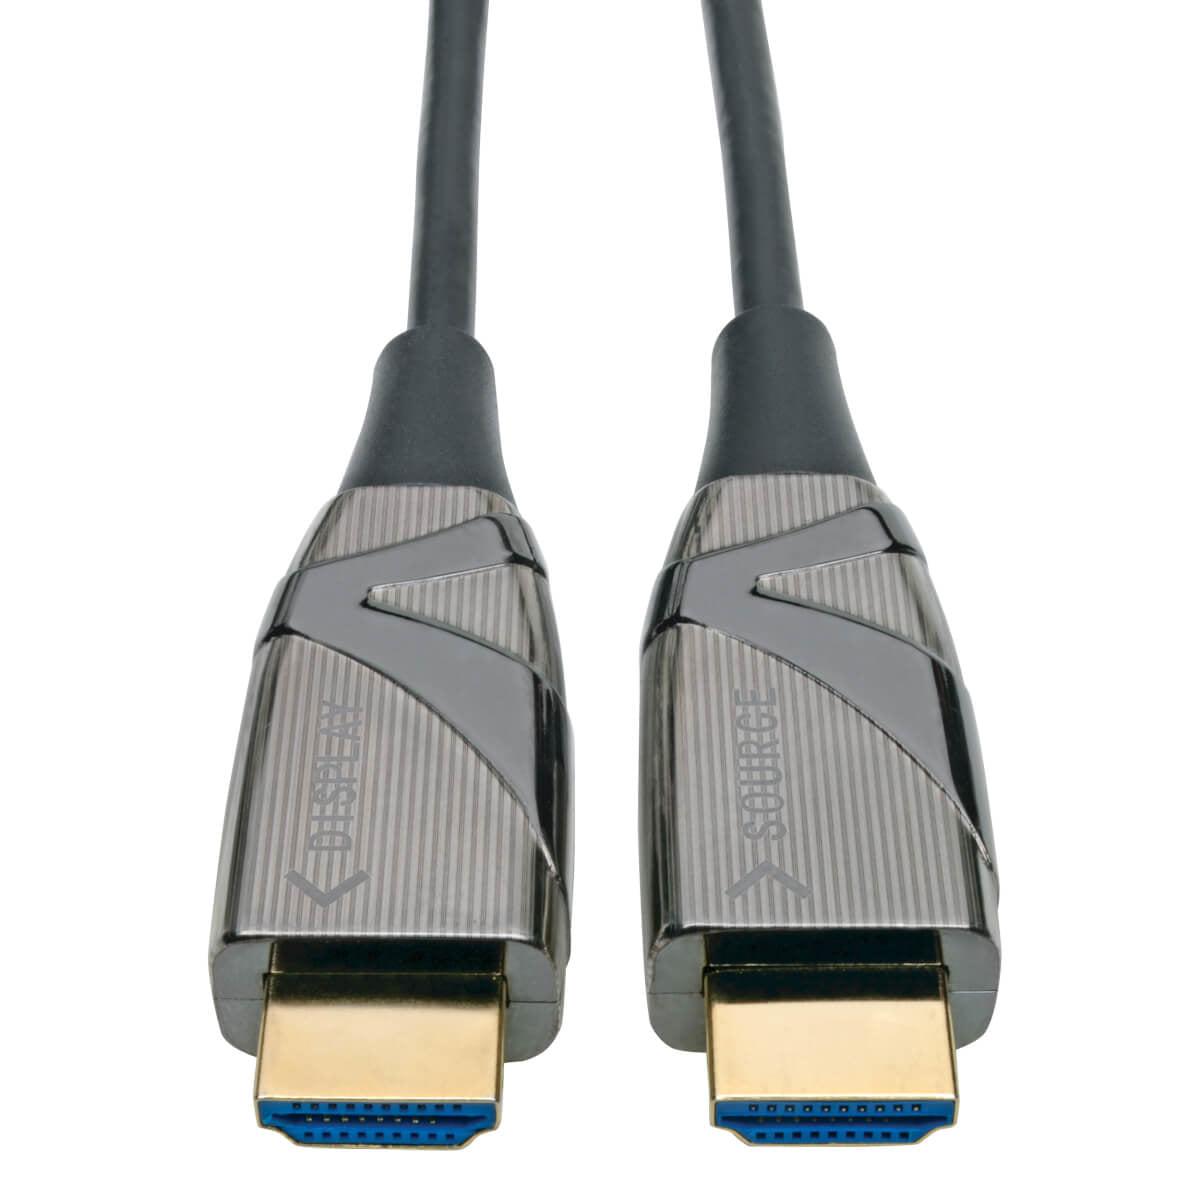 Tripp Lite P568-45M-Fbr 4K Hdmi Fiber Active Optical Cable (Aoc) - 4K 60 Hz, Hdr, 4:4:4 (M/M), 45 M